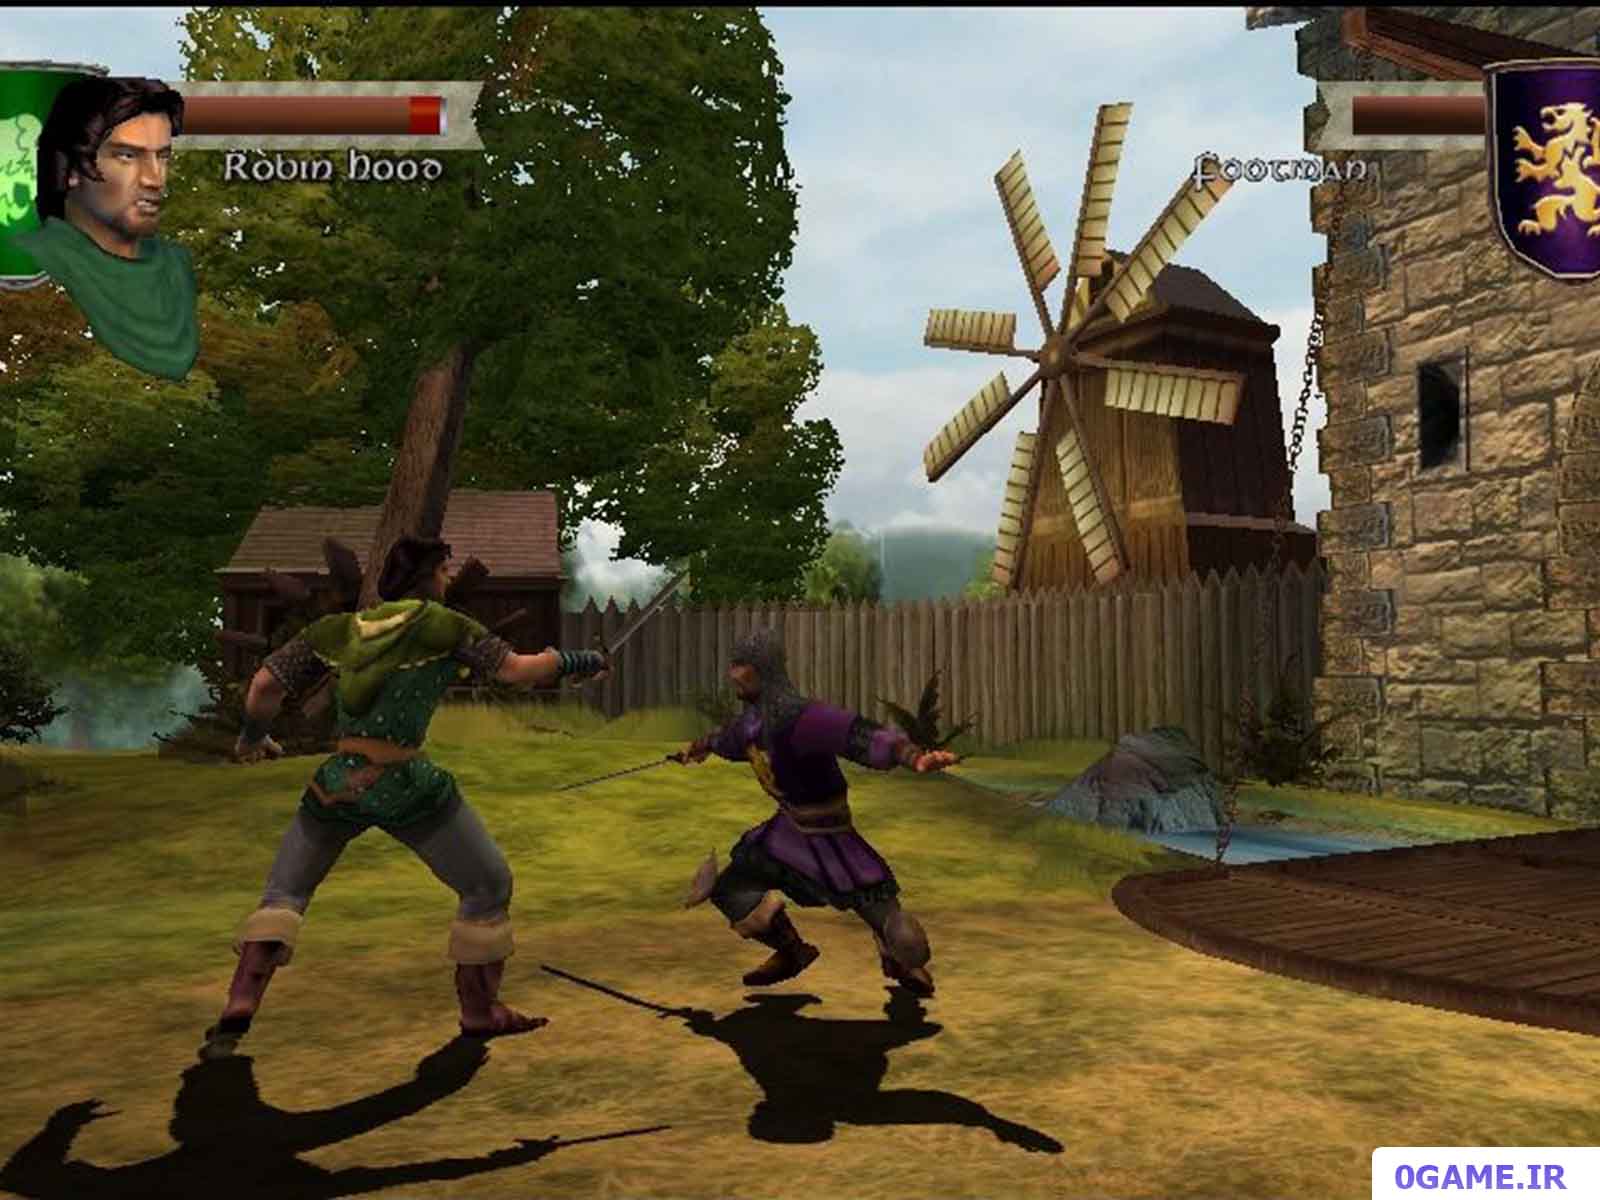 دانلود بازی رابین هود : مدافع تاج (Robin Hood: Defender of the Crown) نسخه کامل برای کامپیوتر